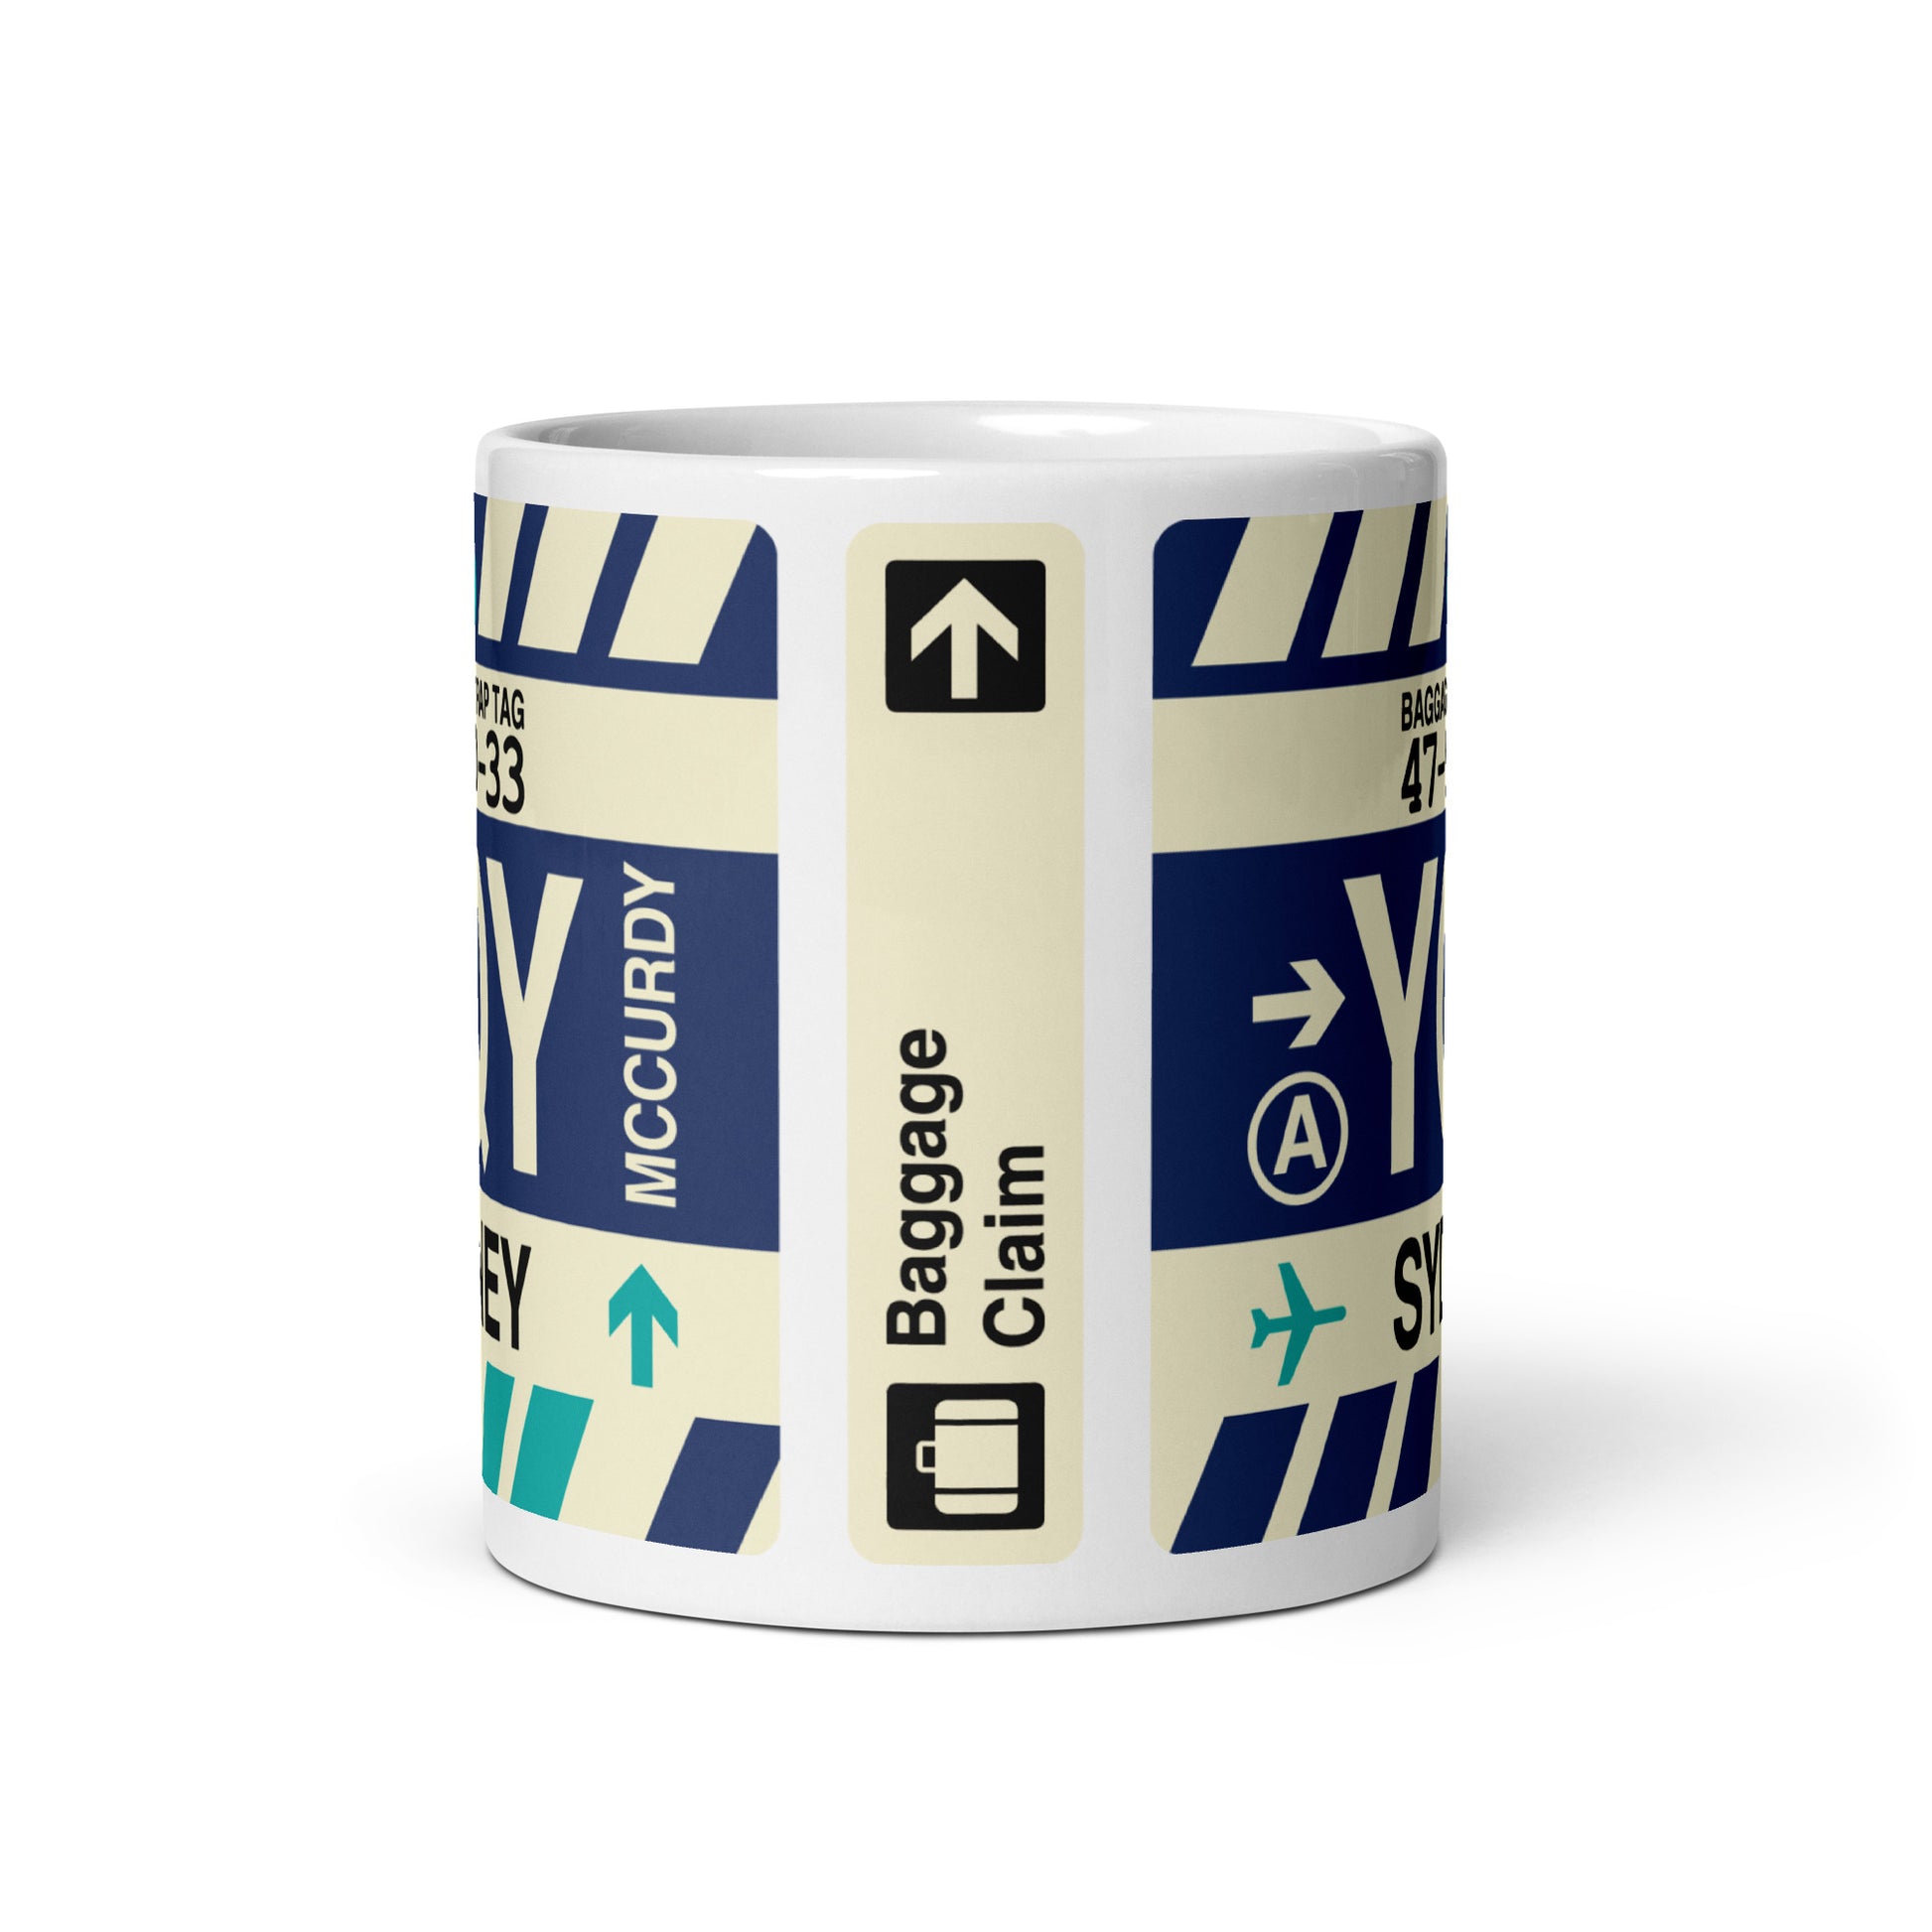 Travel-Themed Coffee Mug • YQY Sydney • YHM Designs - Image 02